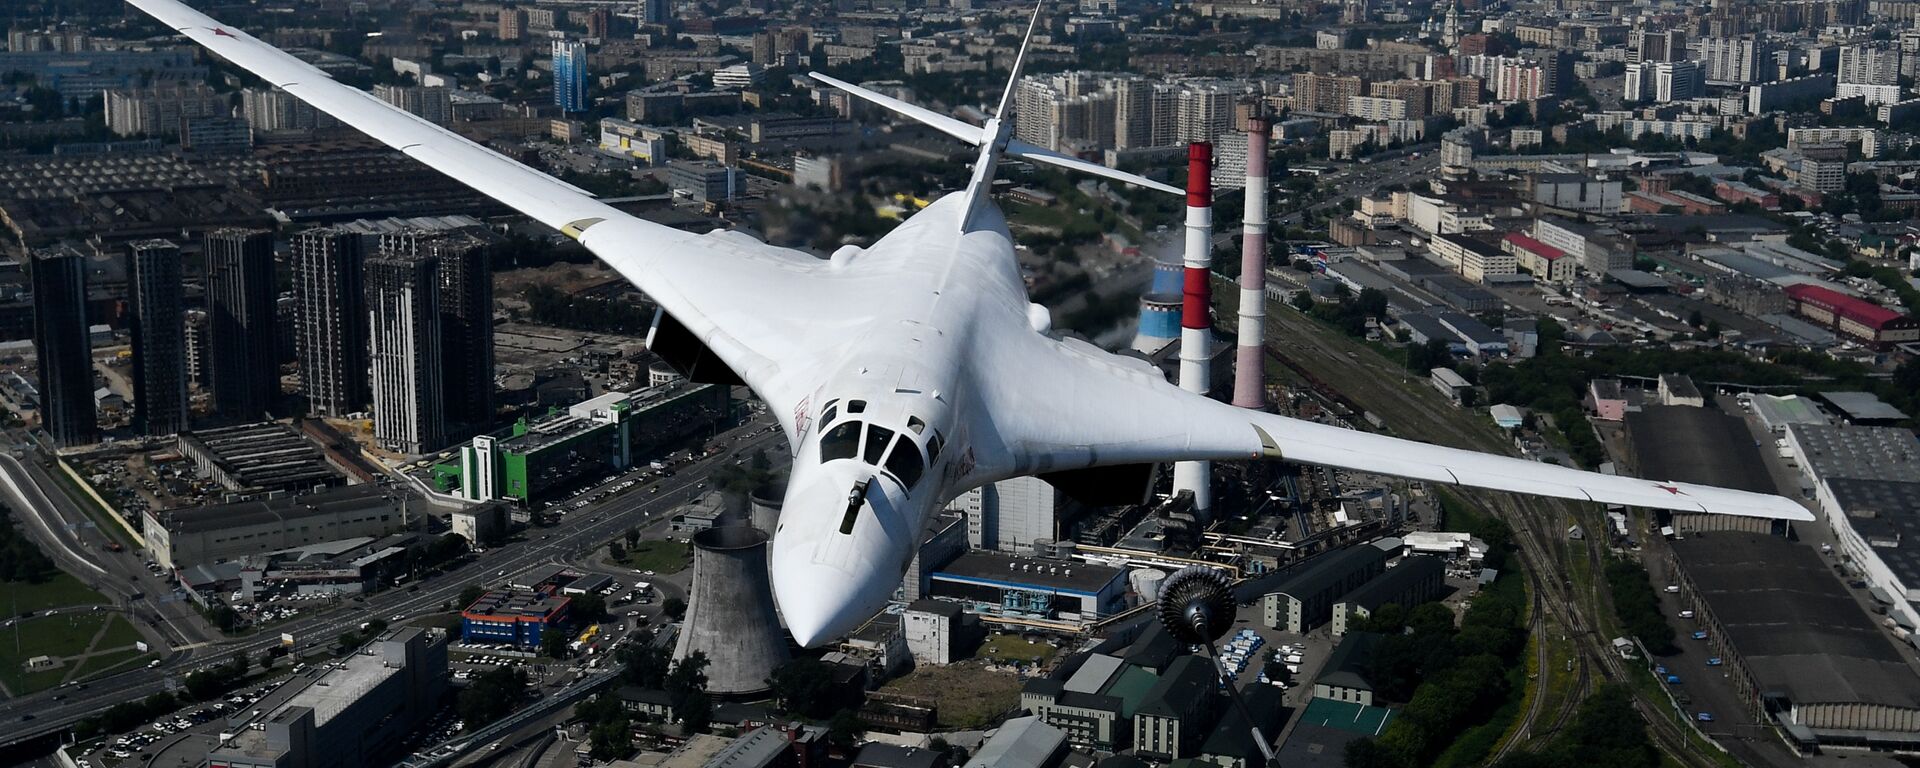 Tu-160 stratejik bombardıman uçağı - Sputnik Türkiye, 1920, 14.06.2021